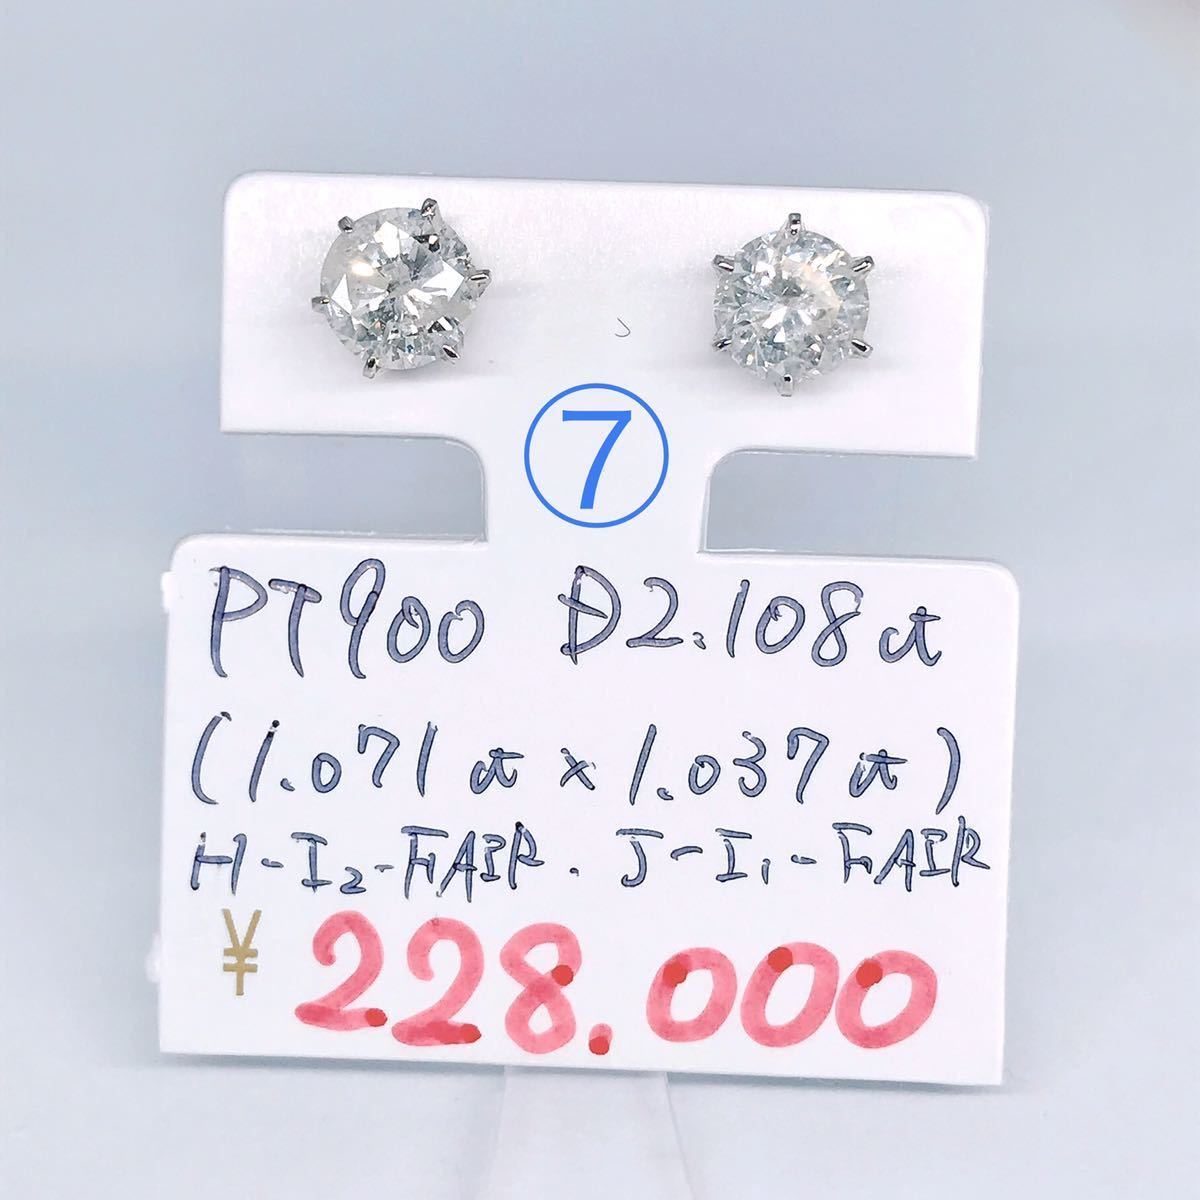 1ctアップ ダイヤモンド ピアス PT900 プラチナ 大粒 ダイヤ 合計2ct